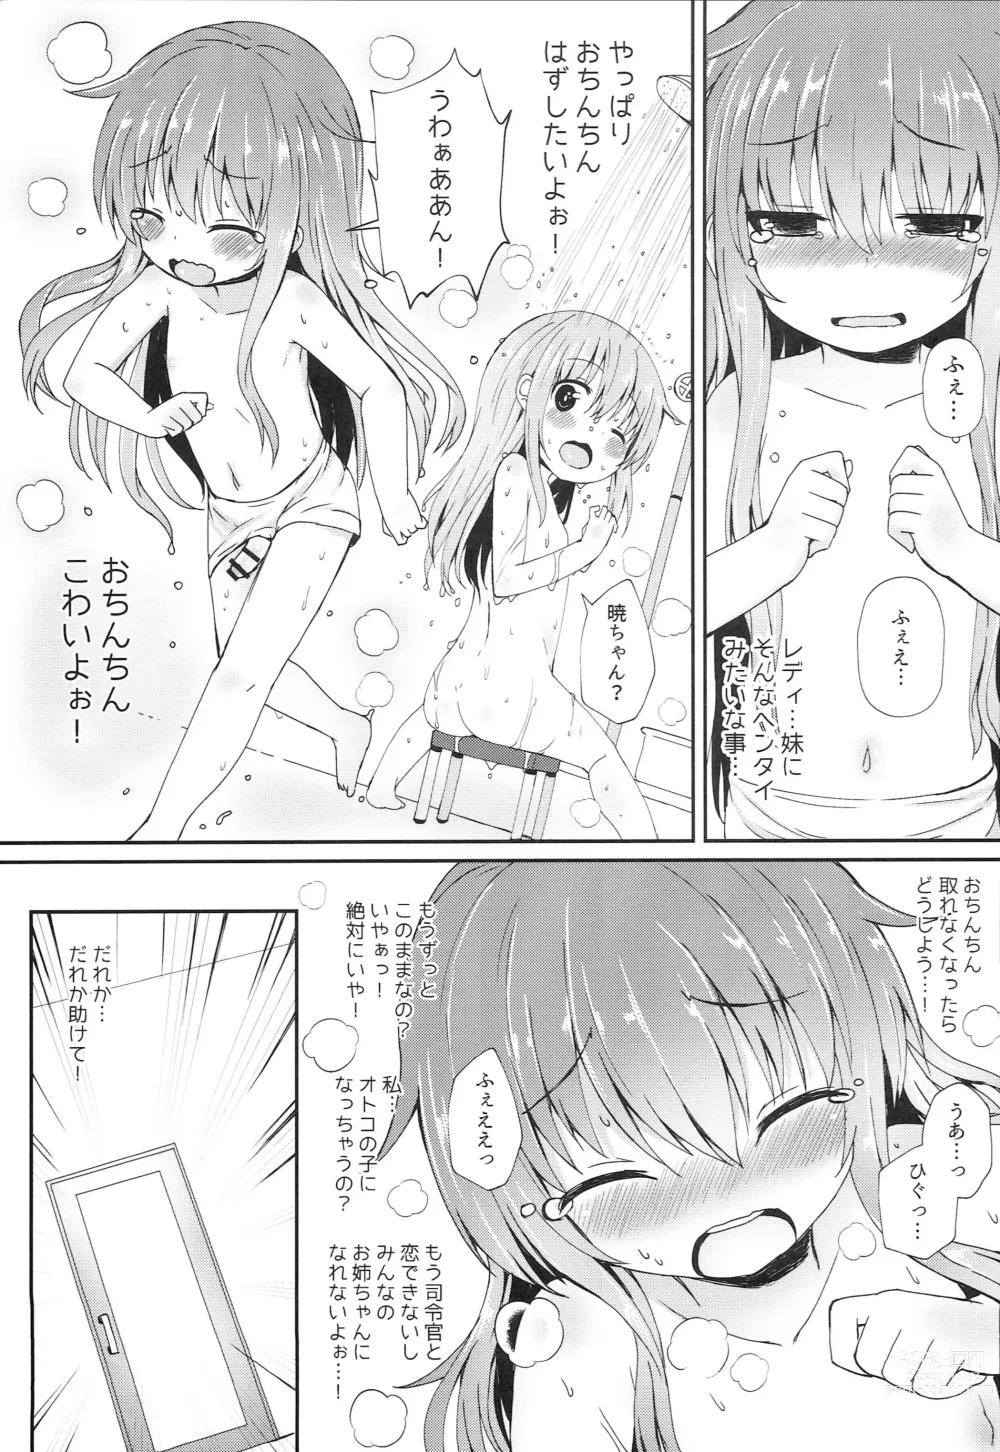 Page 18 of doujinshi Uchi no Akatsuki ga Haemashite.